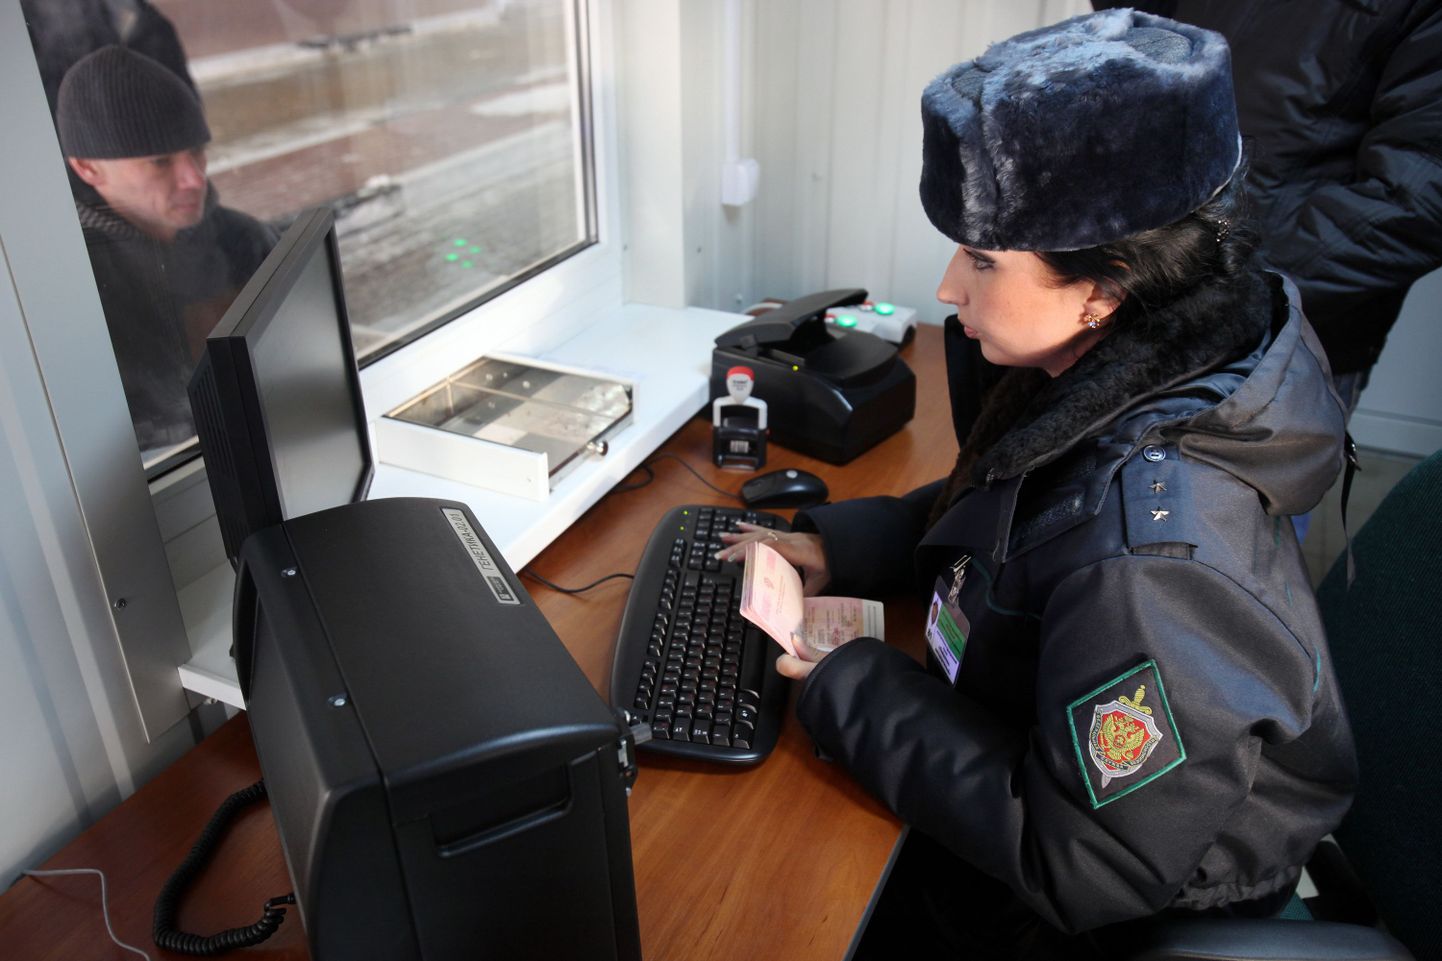 Venemaa piiril peeti kinni Soome kodakondsusega naine, kelle autost leiti türklane